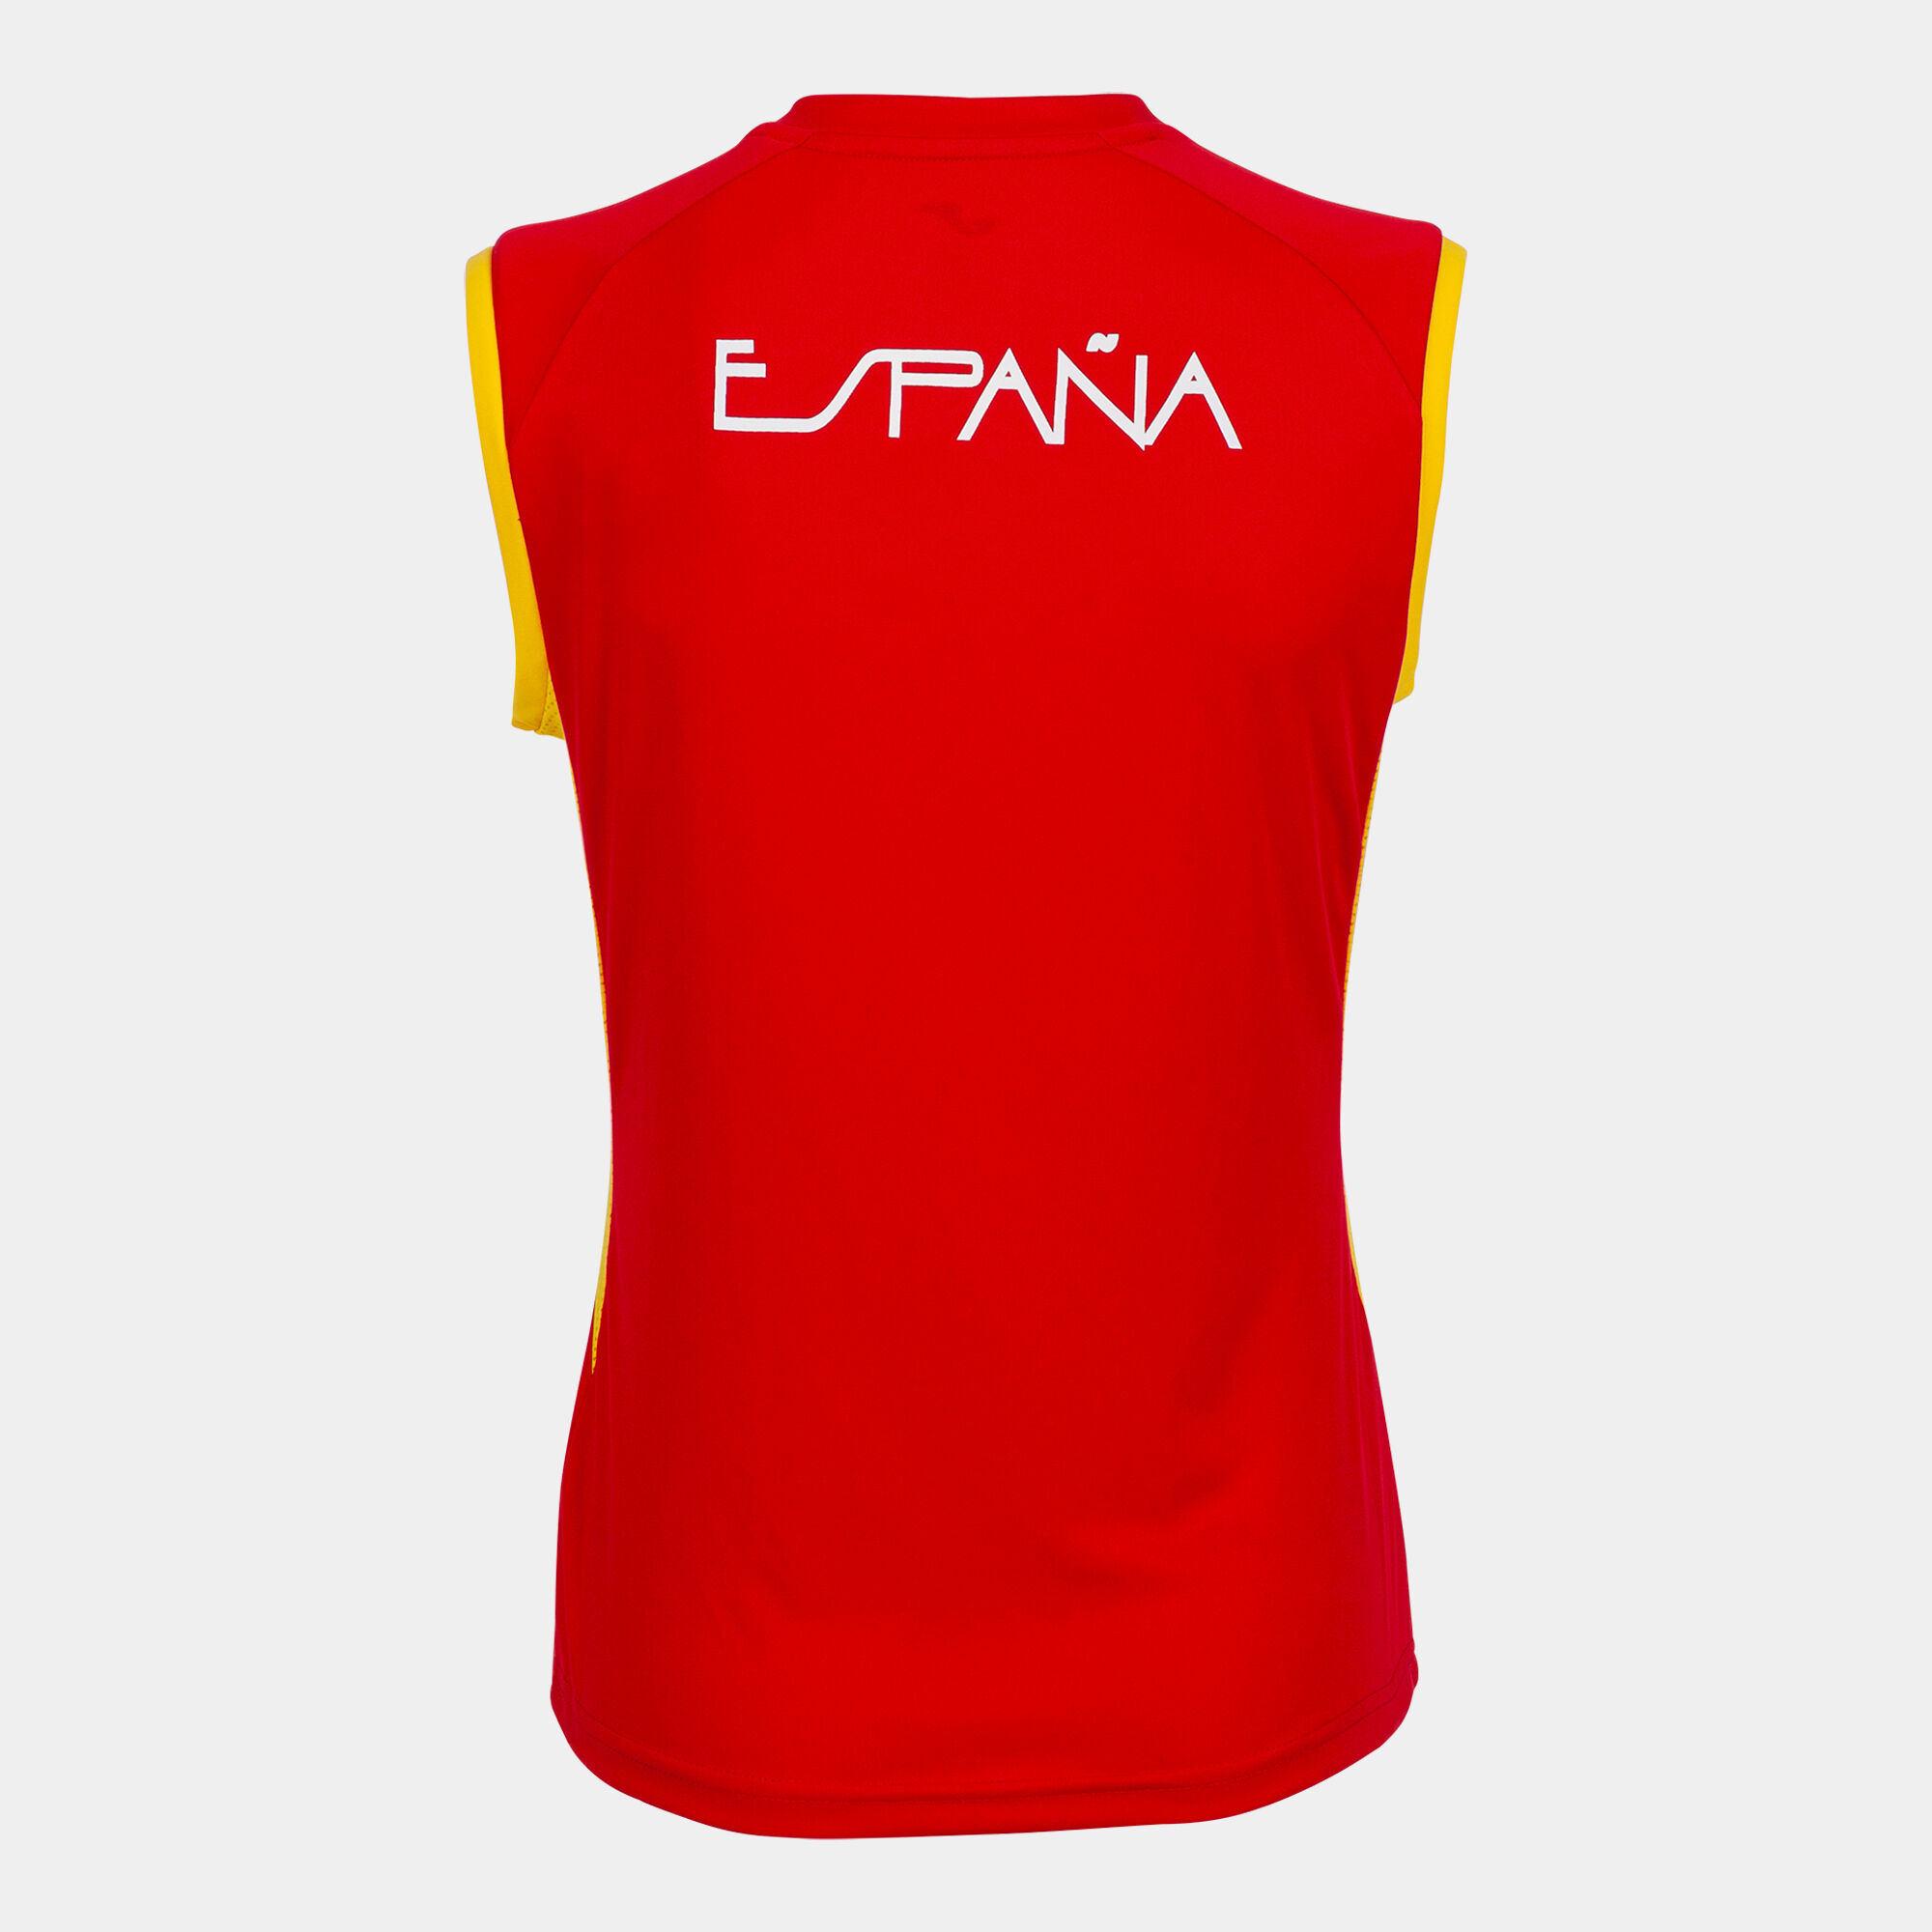 Sleeveless t-shirt Spanish Olympic Committee woman